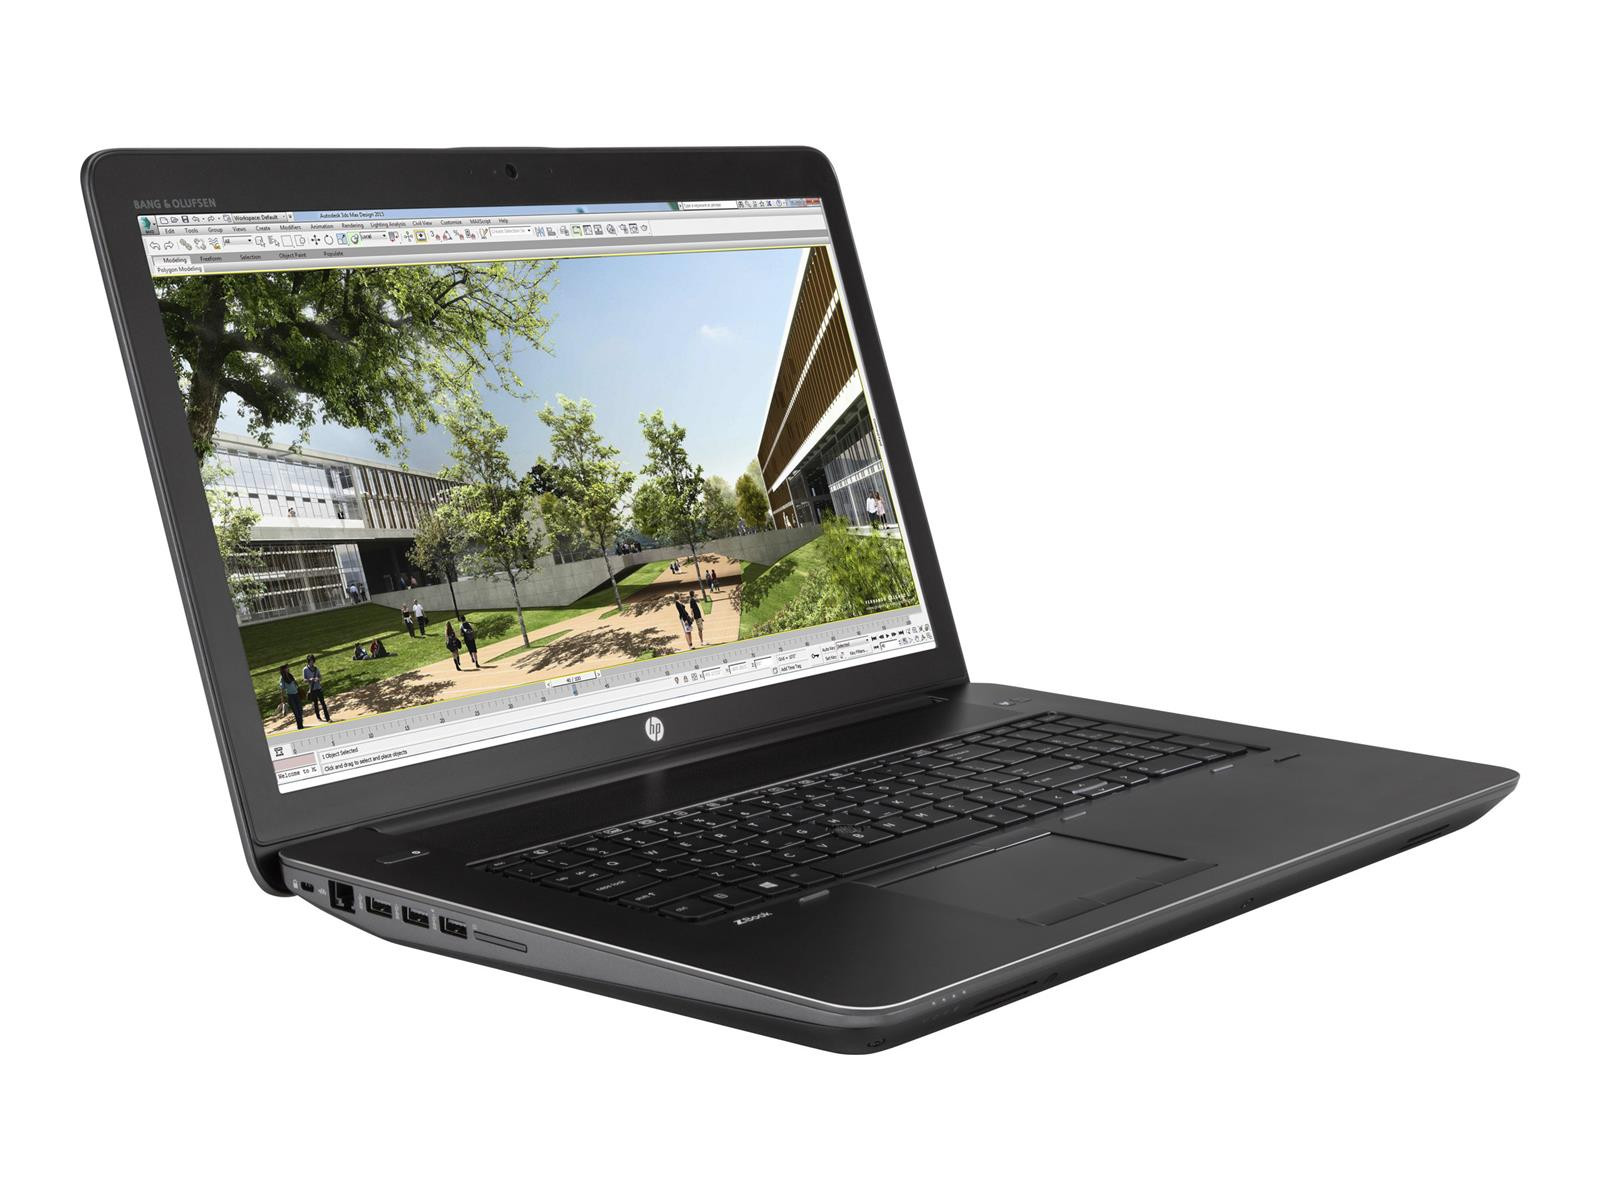 HP ZBook 17 G4 | 17.3" | i7-7700HQ | 16GB | 512GB SSD | M2200 (4GB) | Full HD | Win 10 Pro | DE